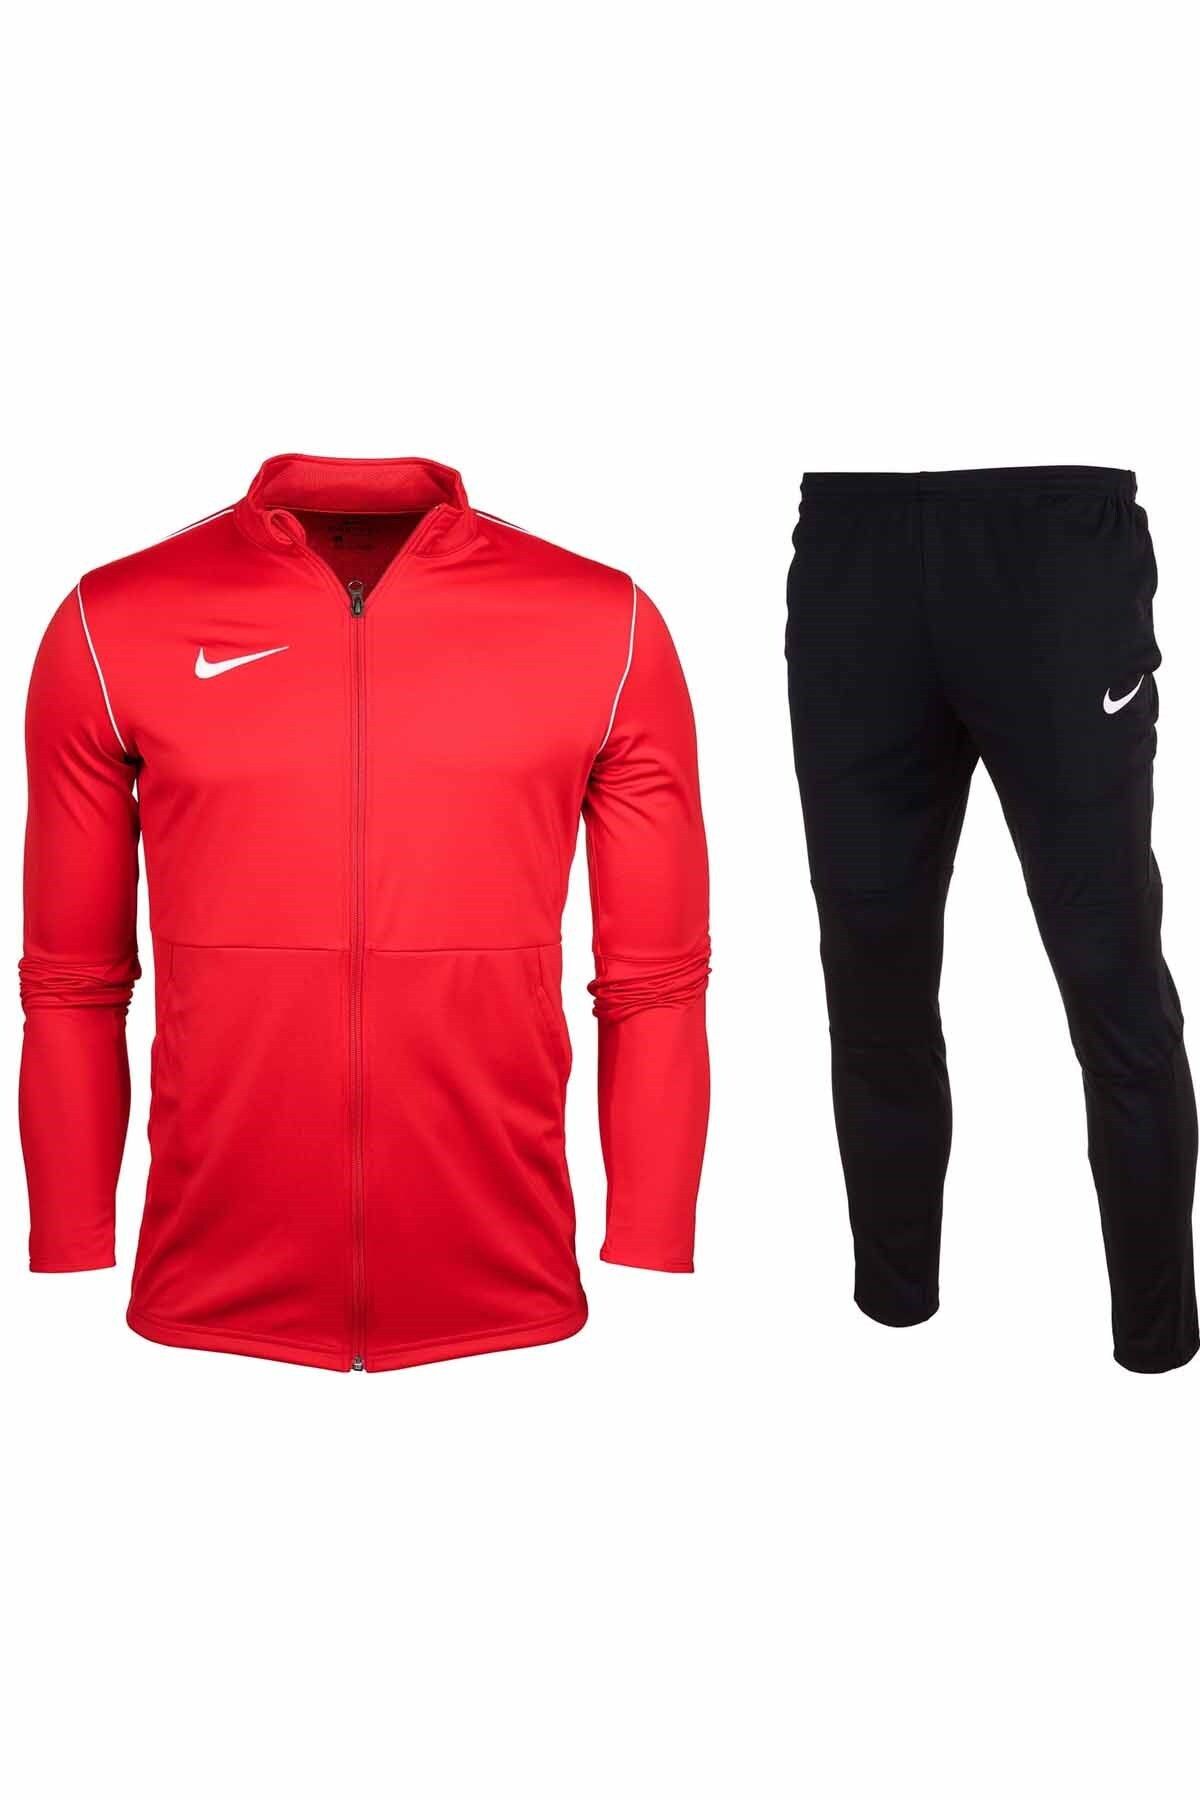 Nike Dry Park 20 B1 Erkek Eşofman Takım Nk6885-657-kırmızı